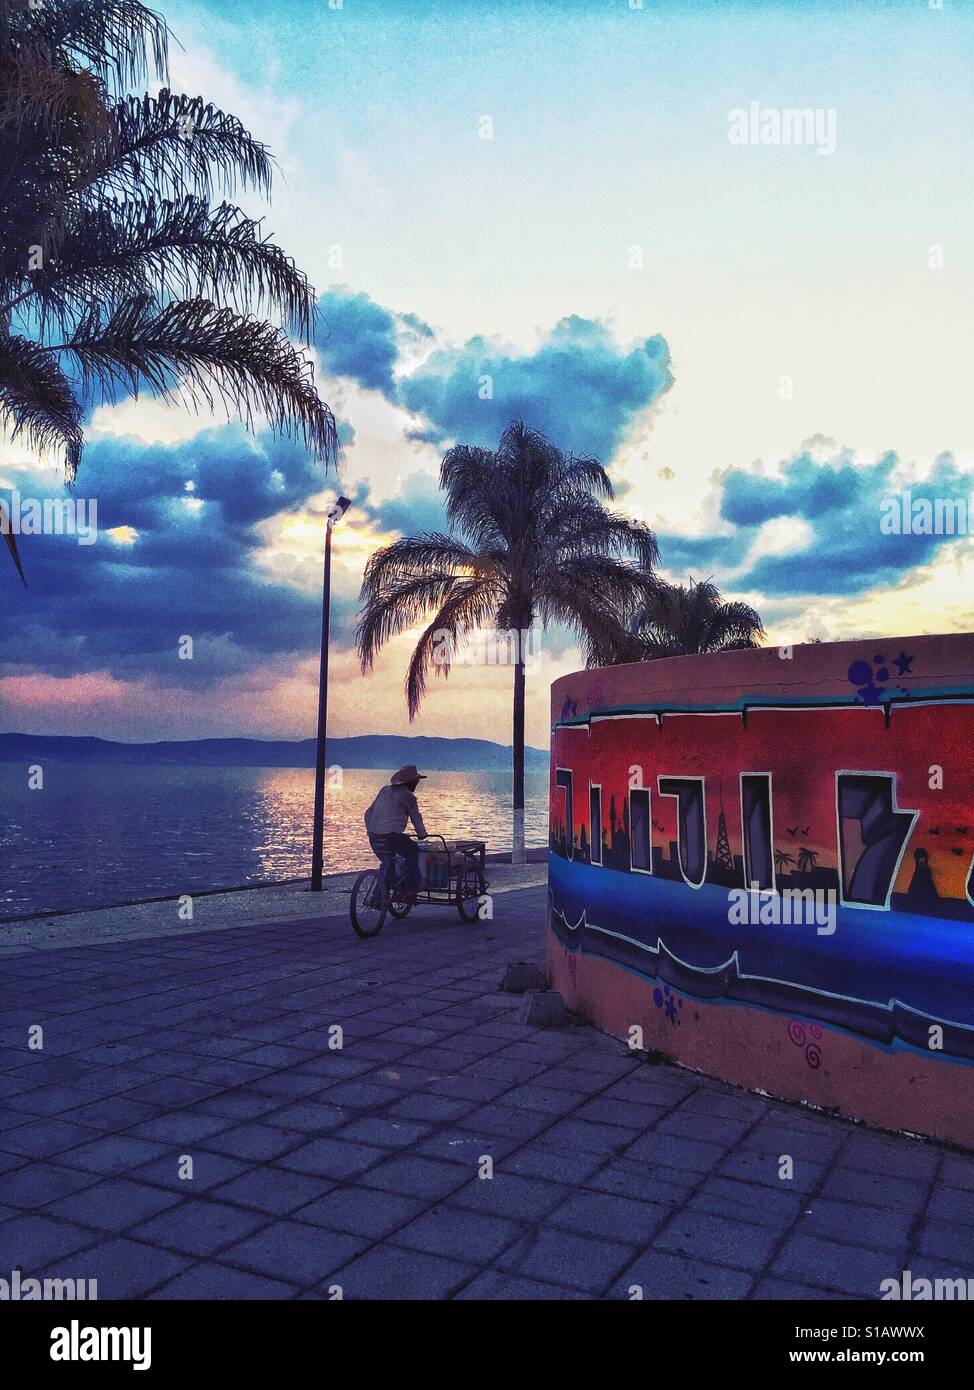 Ein Verkäufer auf einem Fahrrad fährt mit dem Ajijic Malecon bei Sonnenuntergang. Stockfoto